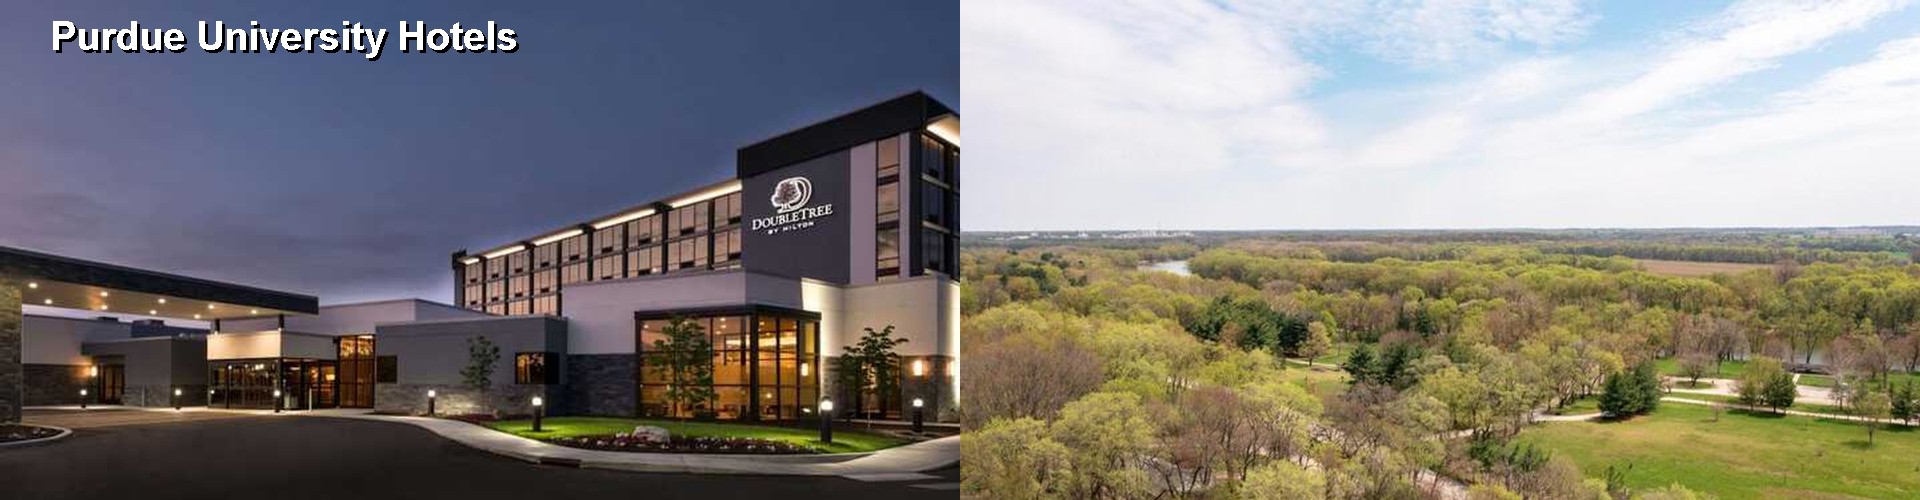 5 Best Hotels near Purdue University